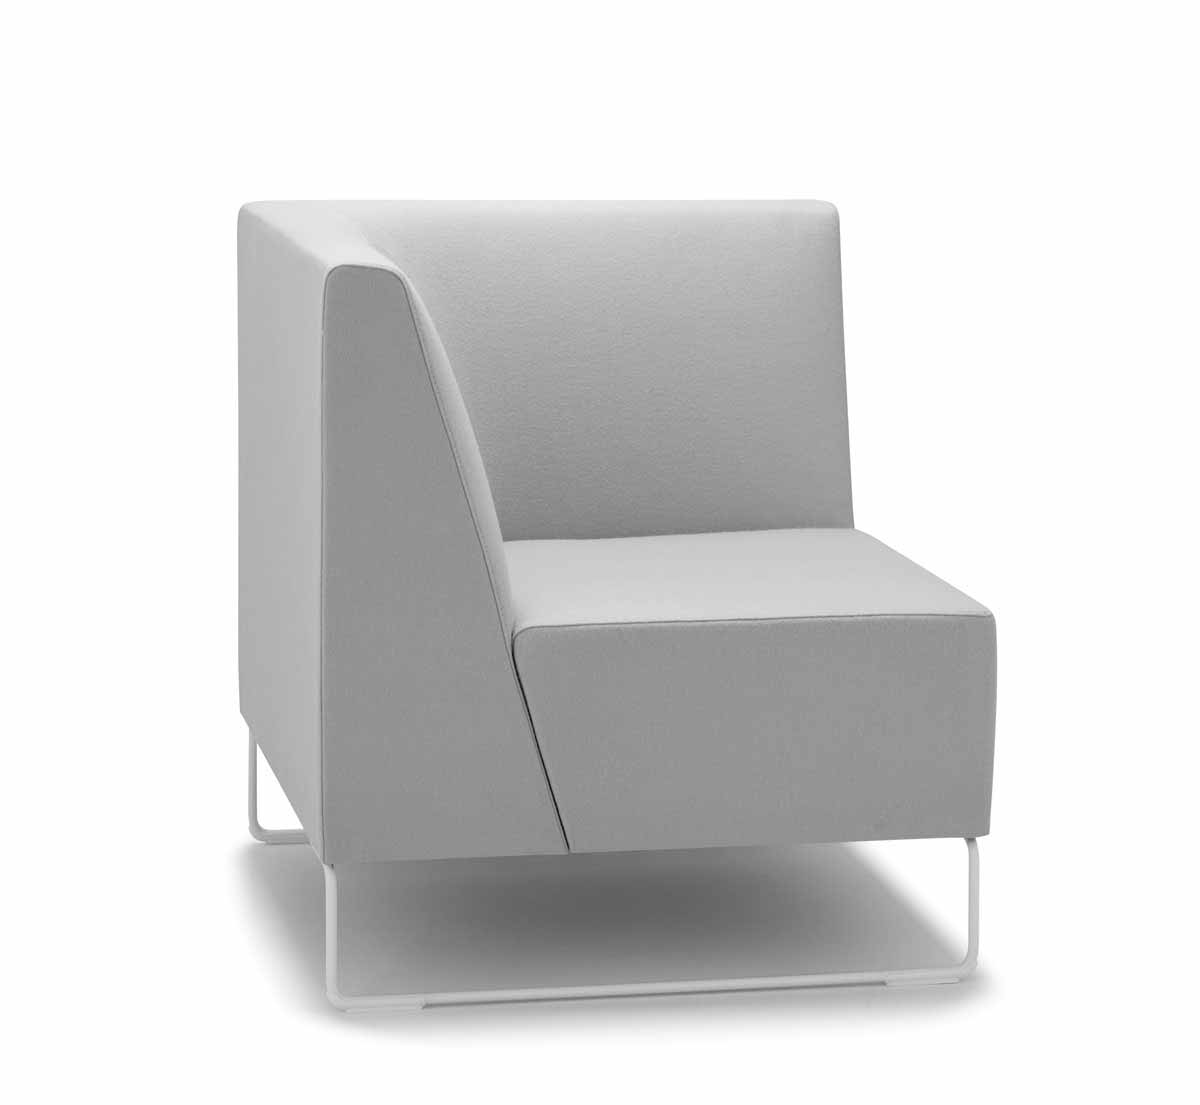 Chair_3.jpg